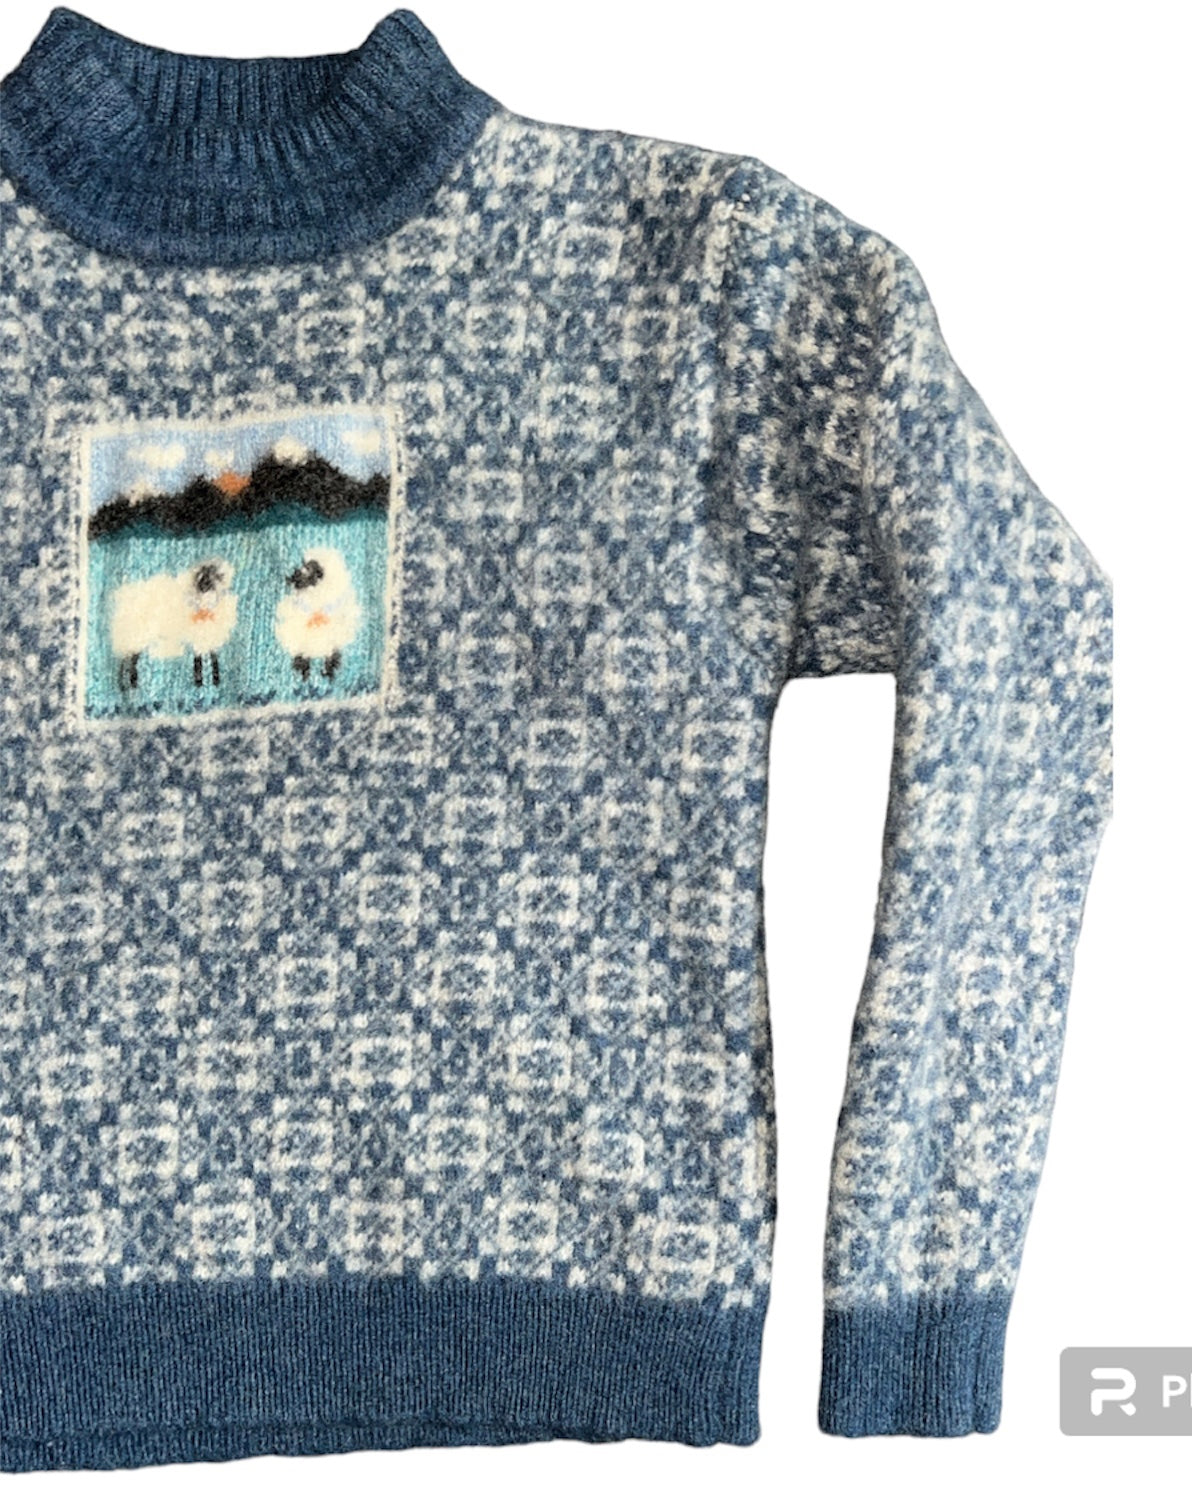 Handmade Wool Sweater (S)